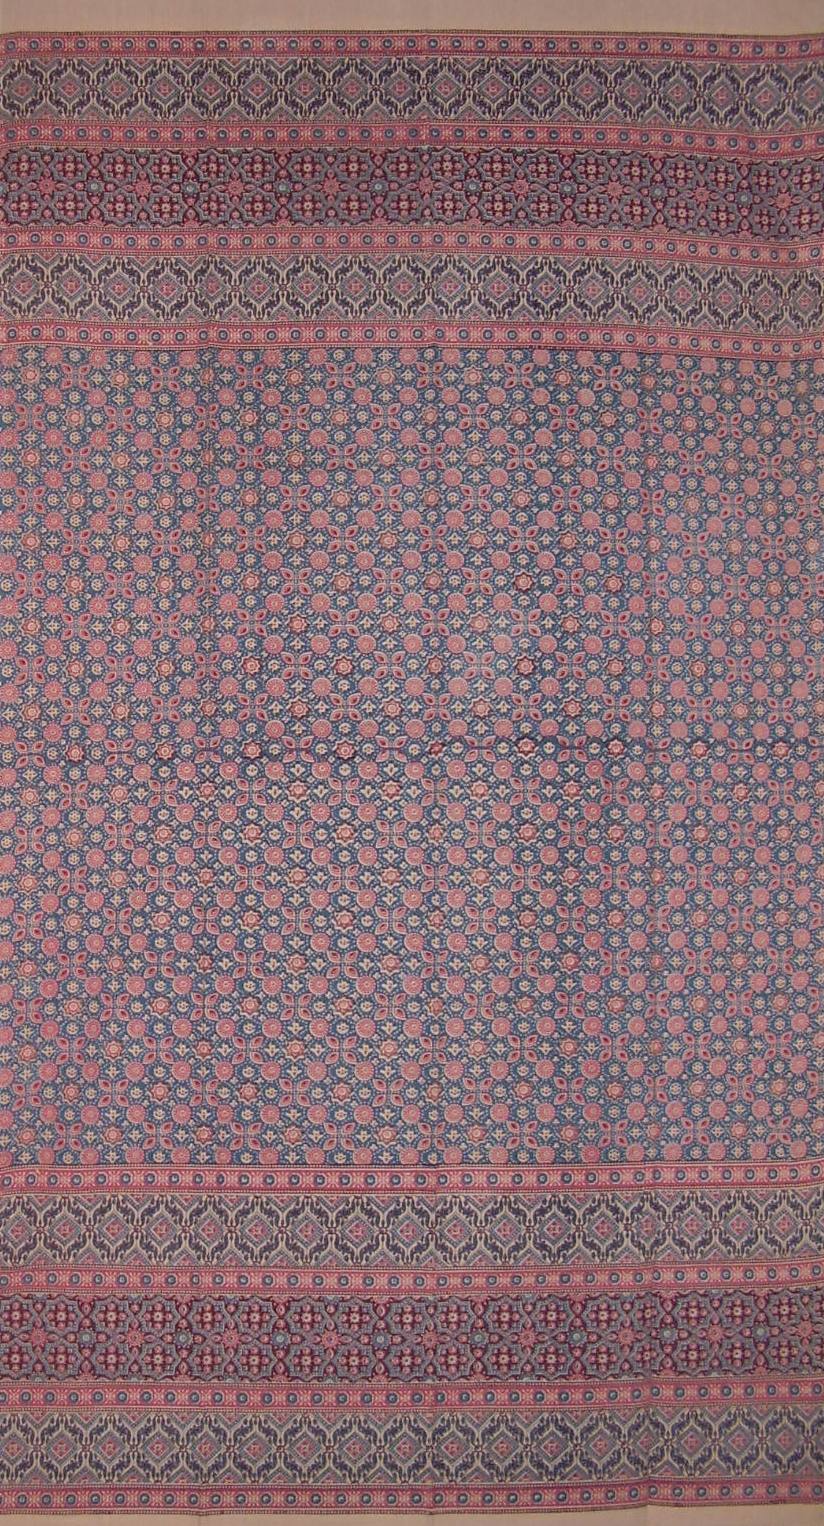 摩洛哥方巾印花窗簾布簾面板棉質 46 英吋 x 82 英吋鮭魚粉紅色